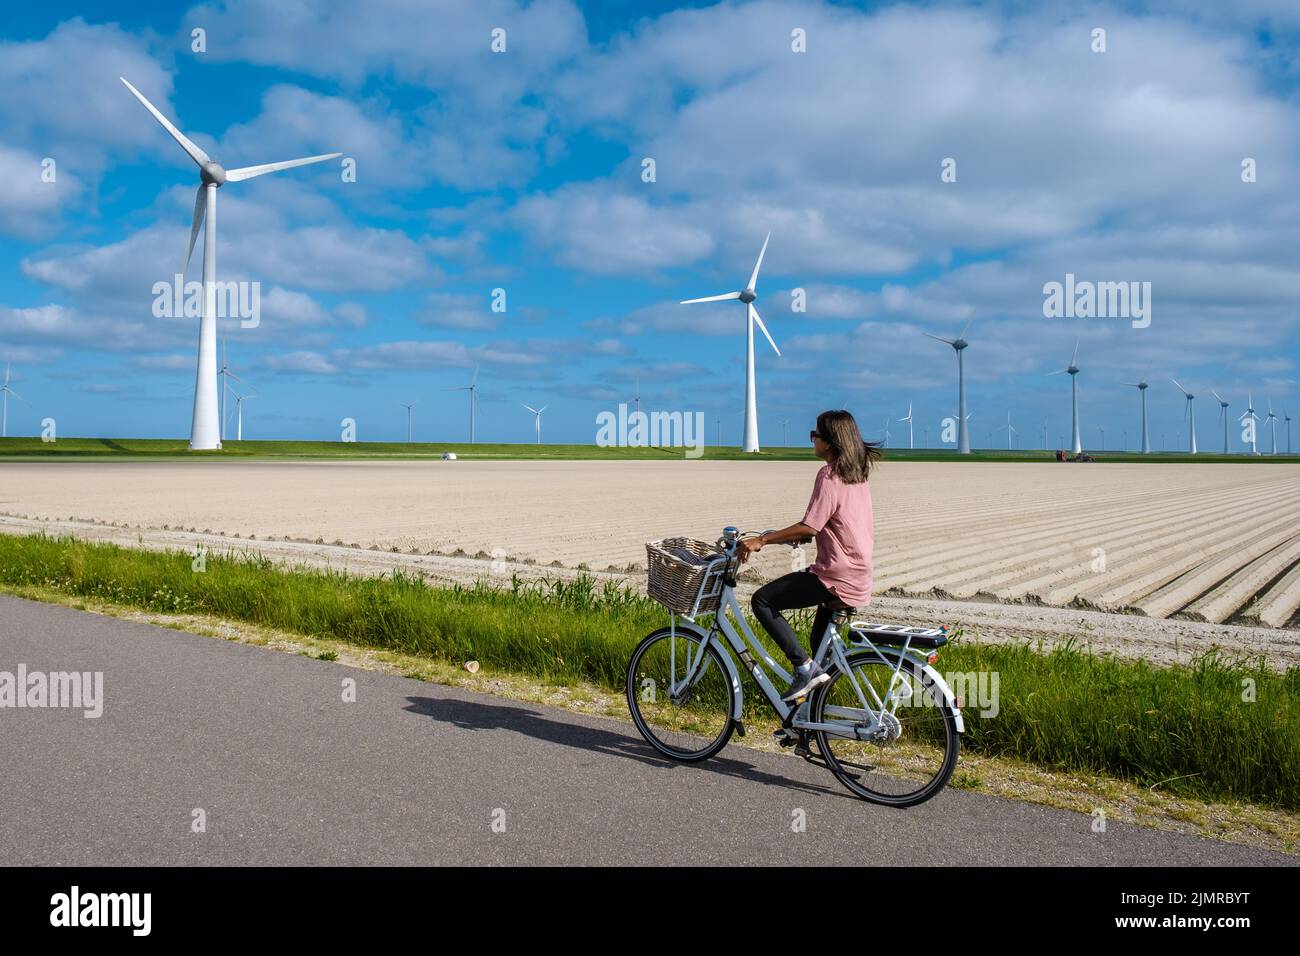 Junge Frau elektrische grüne Fahrrad von Windmühle Bauernhof , Windmühlen isoliert an einem schönen hellen Tag Niederlande Flevoland Nein Stockfoto